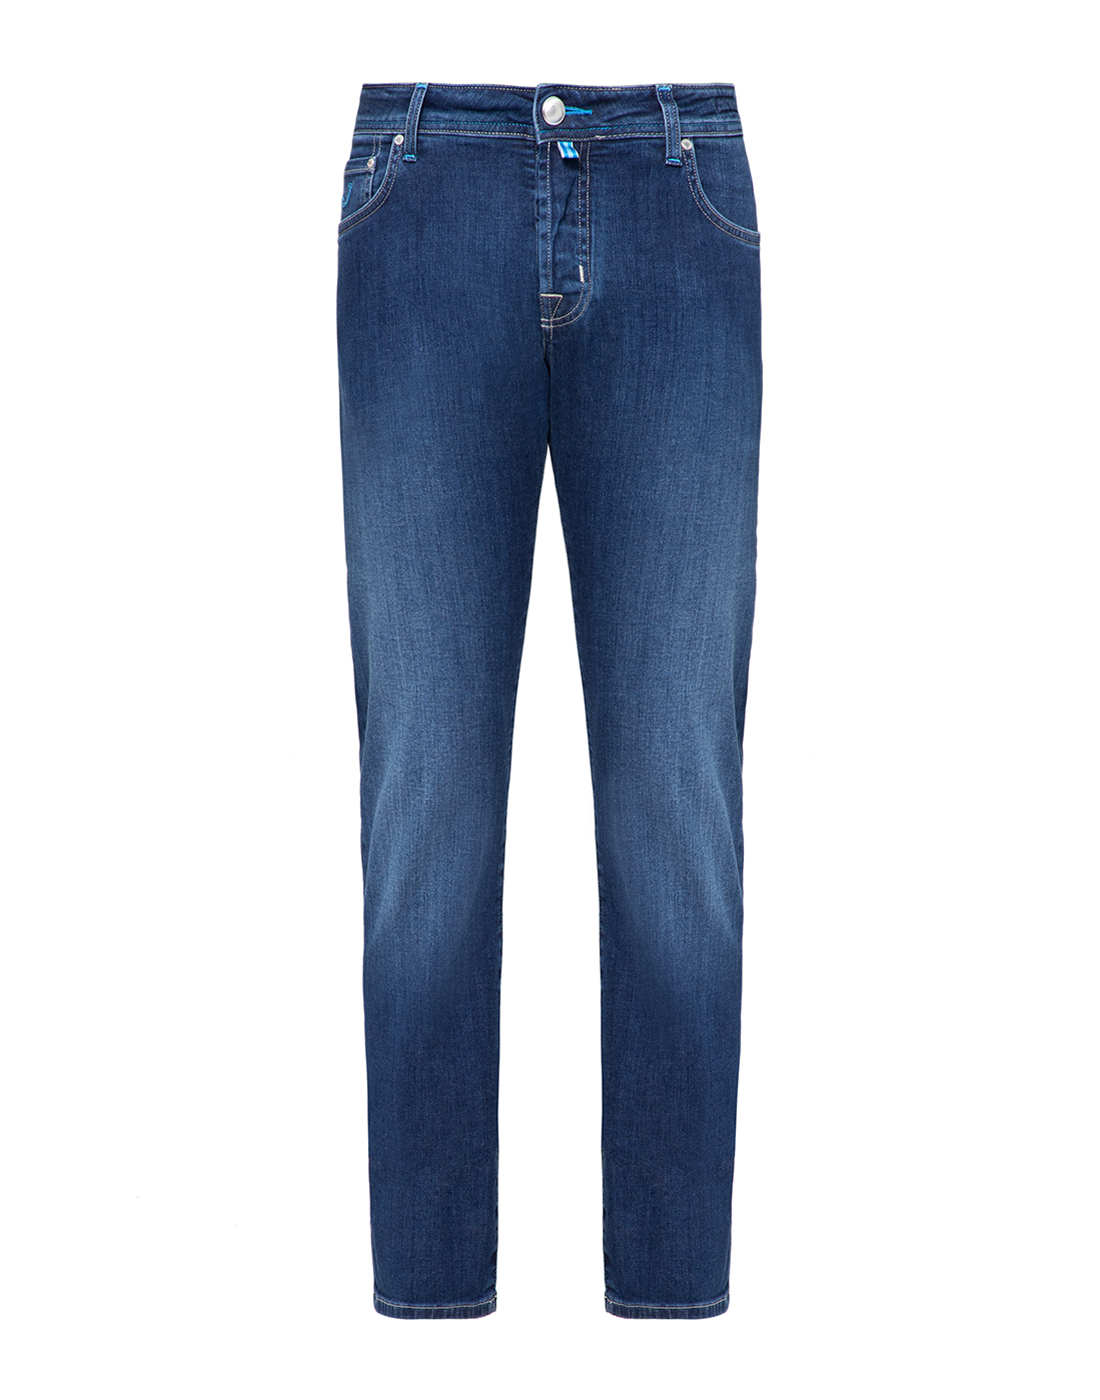 Мужские синие джинсы Jacob Cohen SJ620 COMF-00918-1